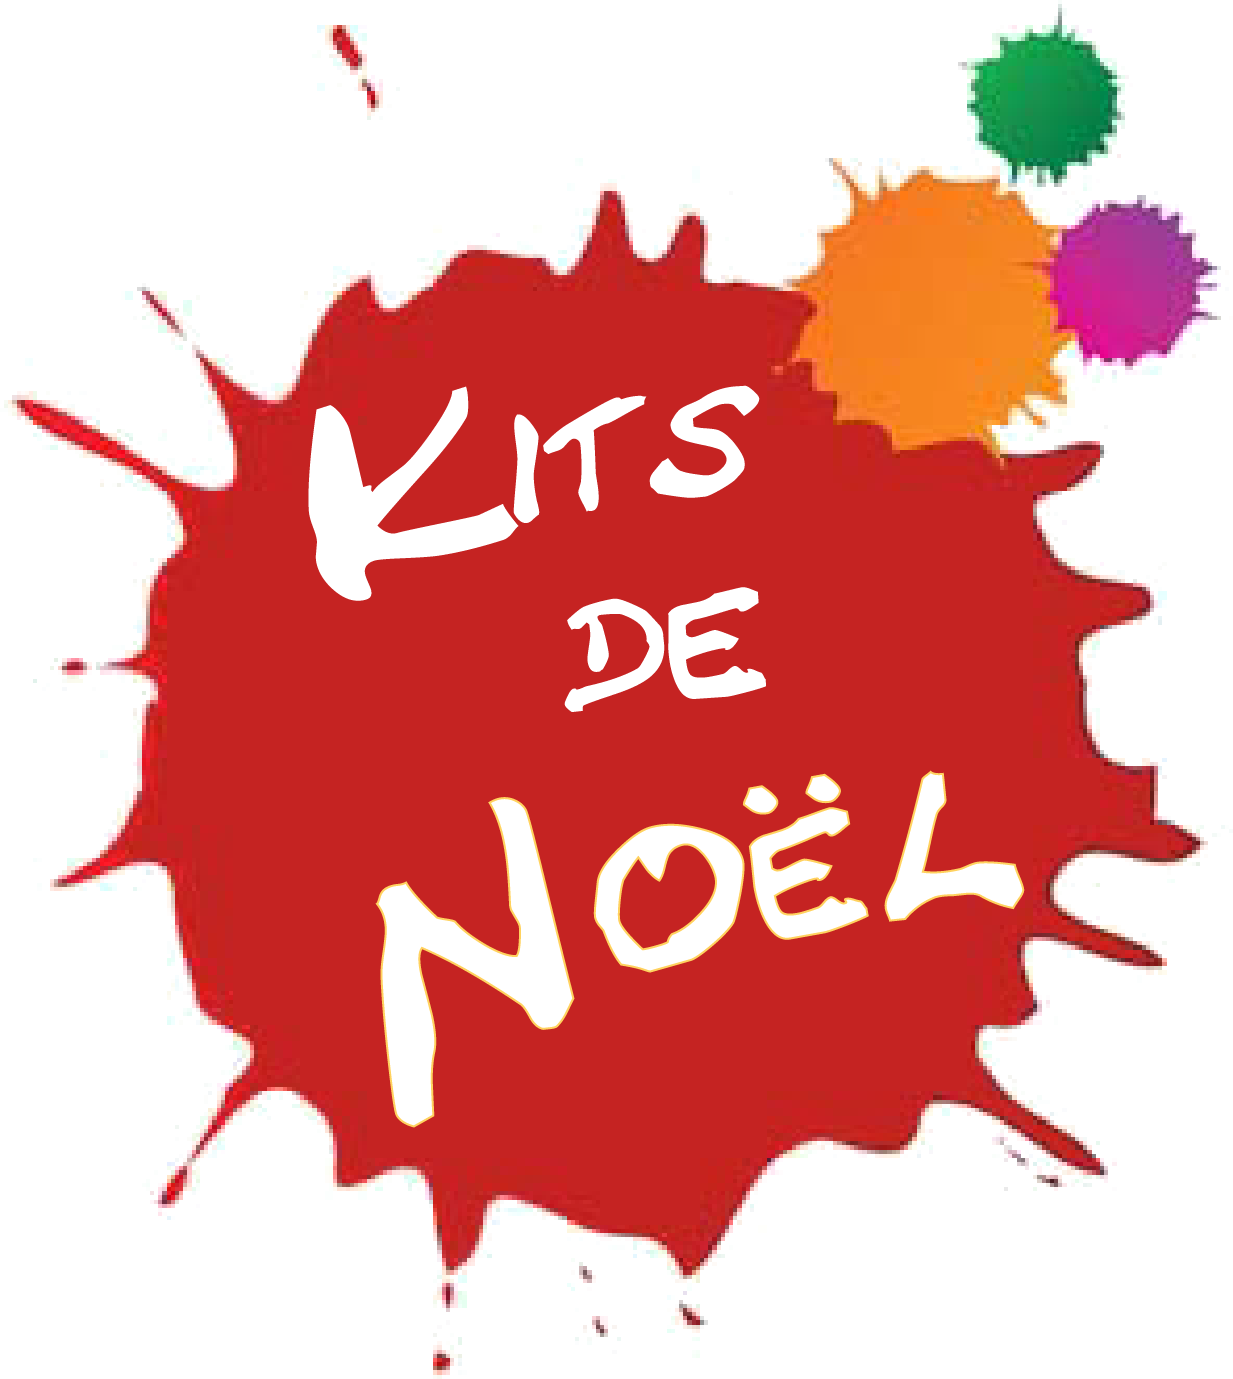 KITS ARC CLASSIQUE NOEL 2021 HERACLES ARCHERIE BORDEAUX MENETROL CLERMONT